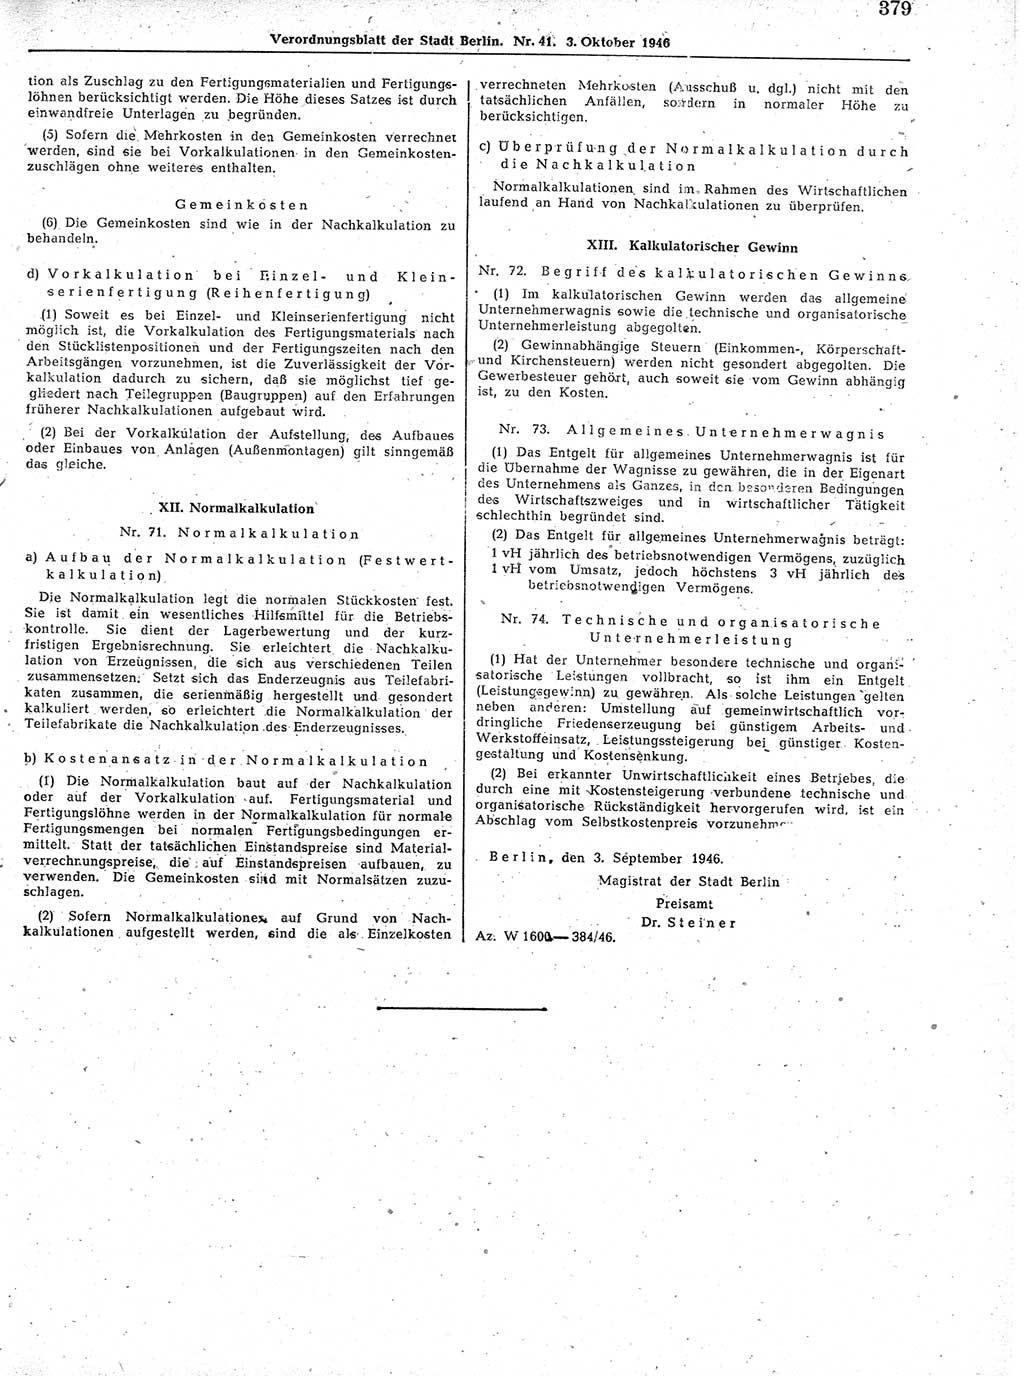 Verordnungsblatt (VOBl.) der Stadt Berlin, für Groß-Berlin 1946, Seite 379 (VOBl. Bln. 1946, S. 379)